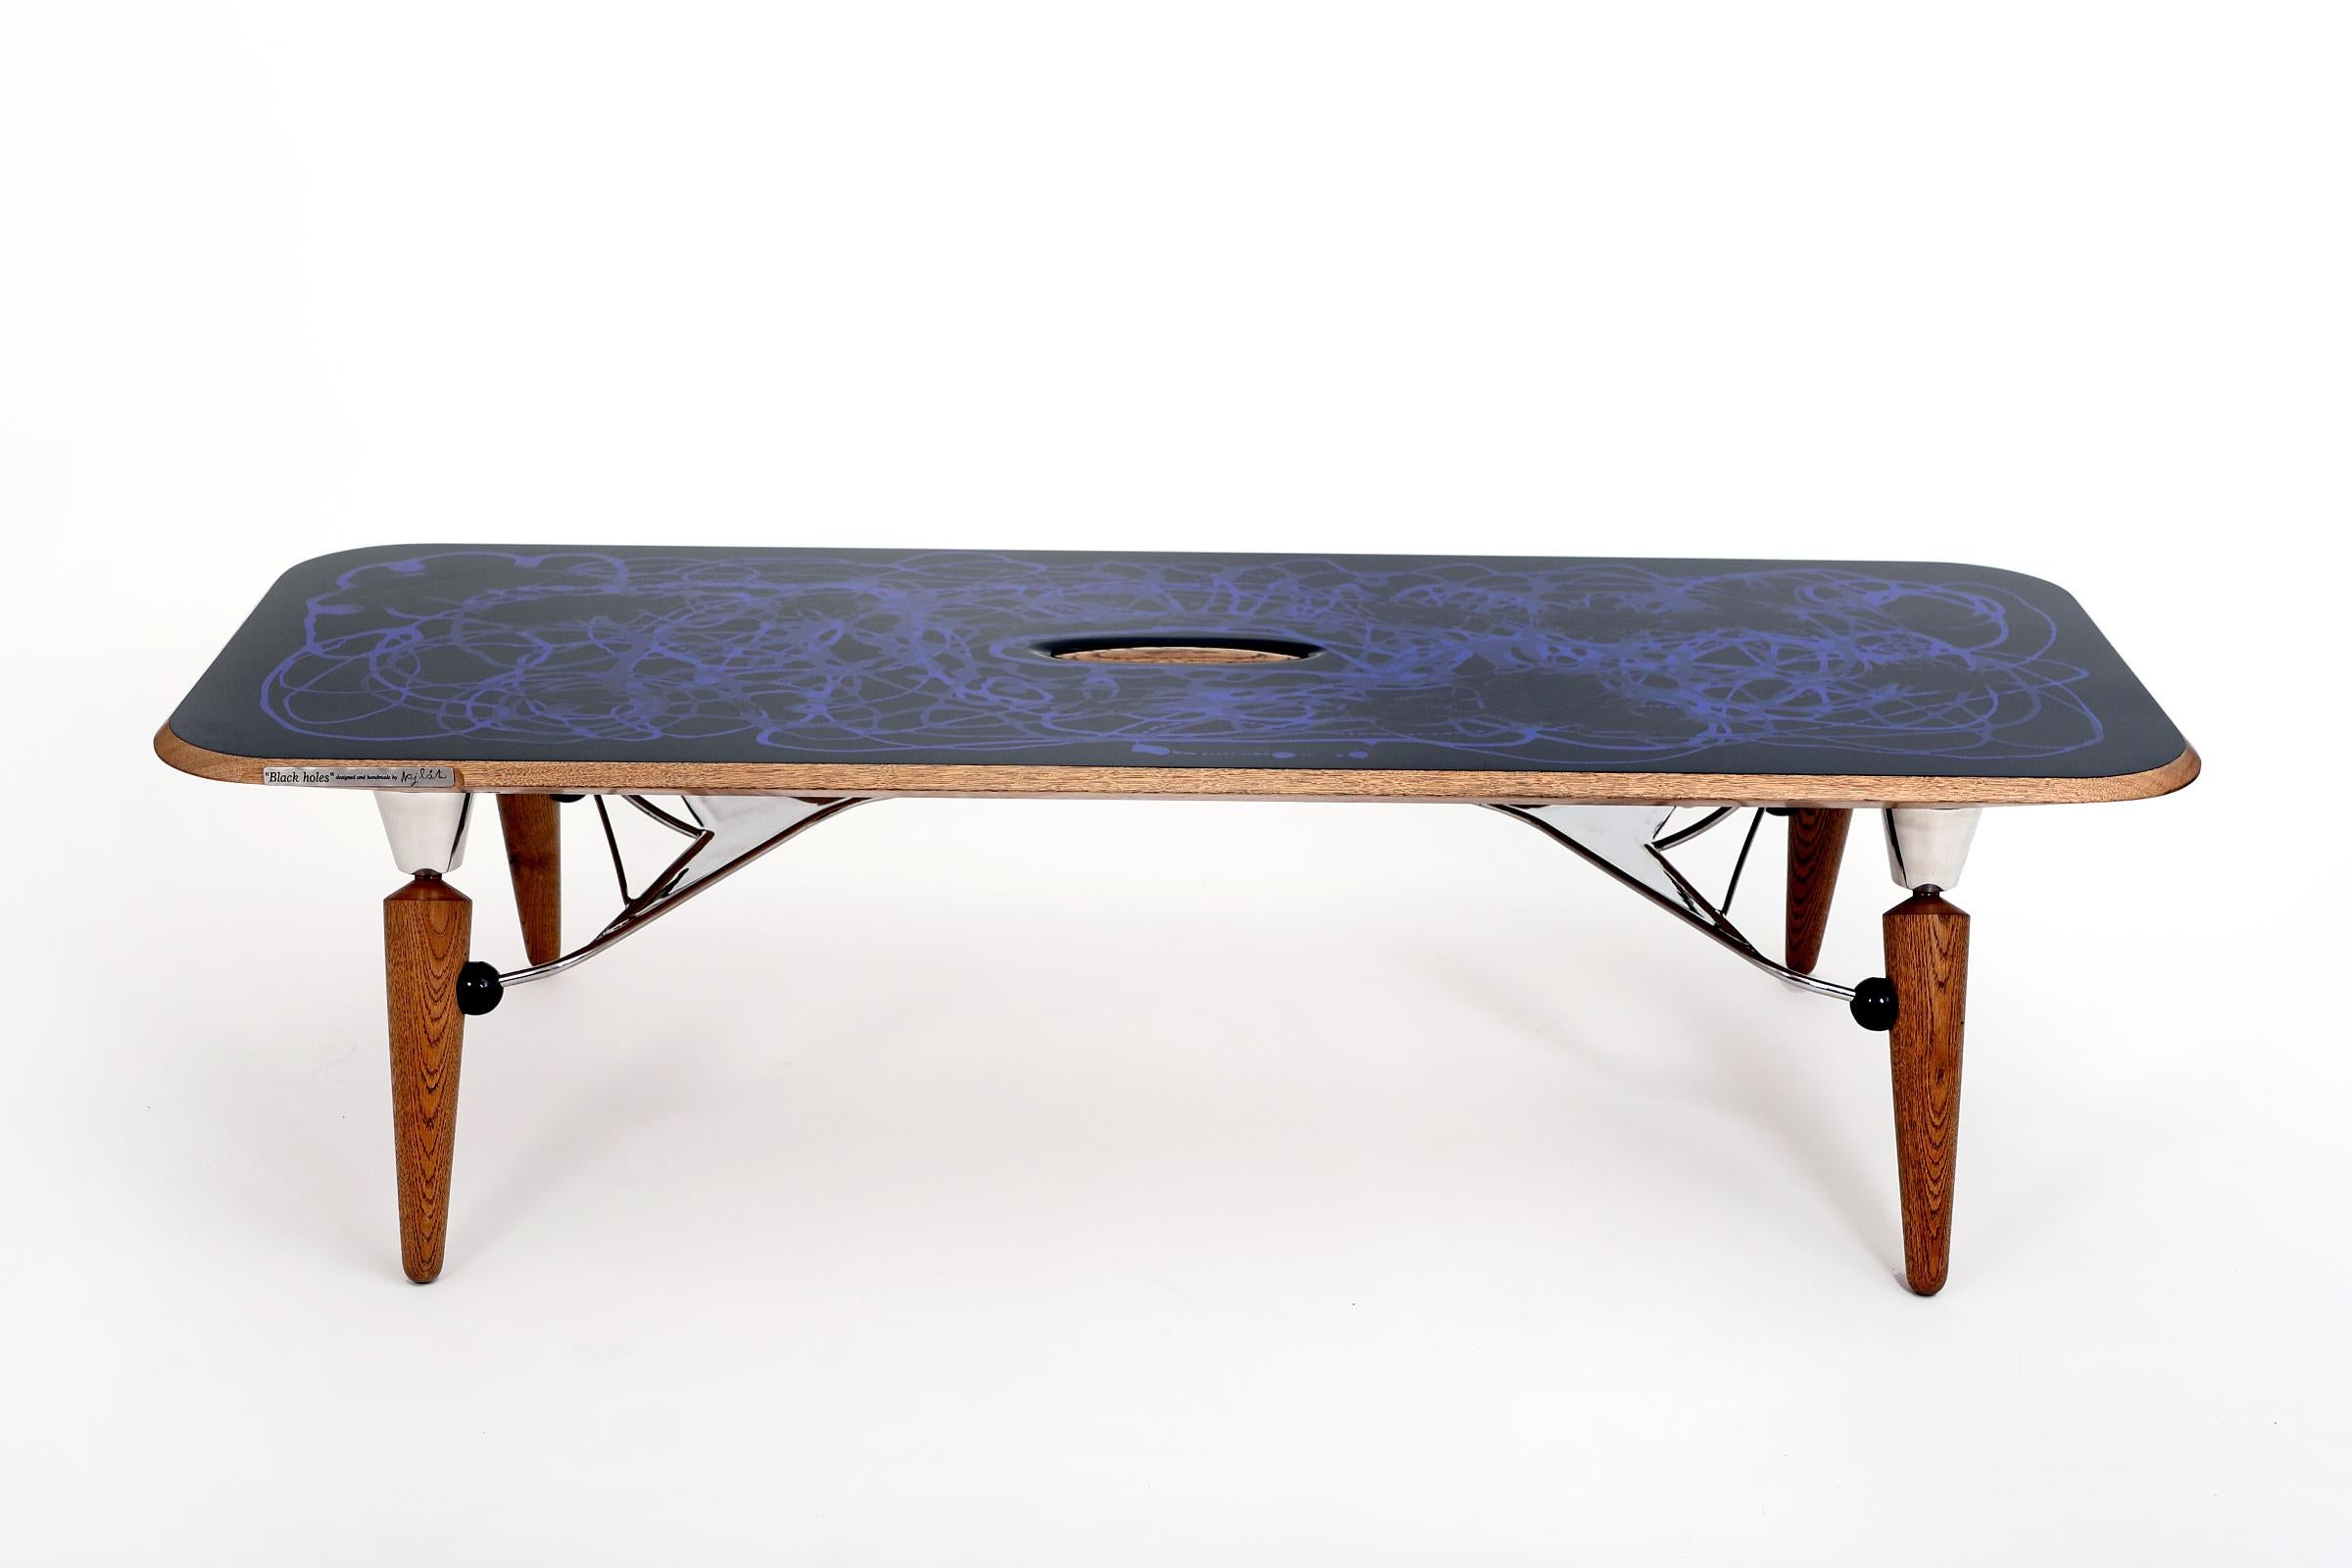 Der Tisch kann in der Höhe verstellt werden (34 - 39 cm), indem man die Beine kippt und den Mechanismus des zentralen Platzes benutzt.
Das Brett mit den Beinen und dem Mittelteil ist aus Eichenholz gefertigt. Die anderen Komponenten des Mechanismus